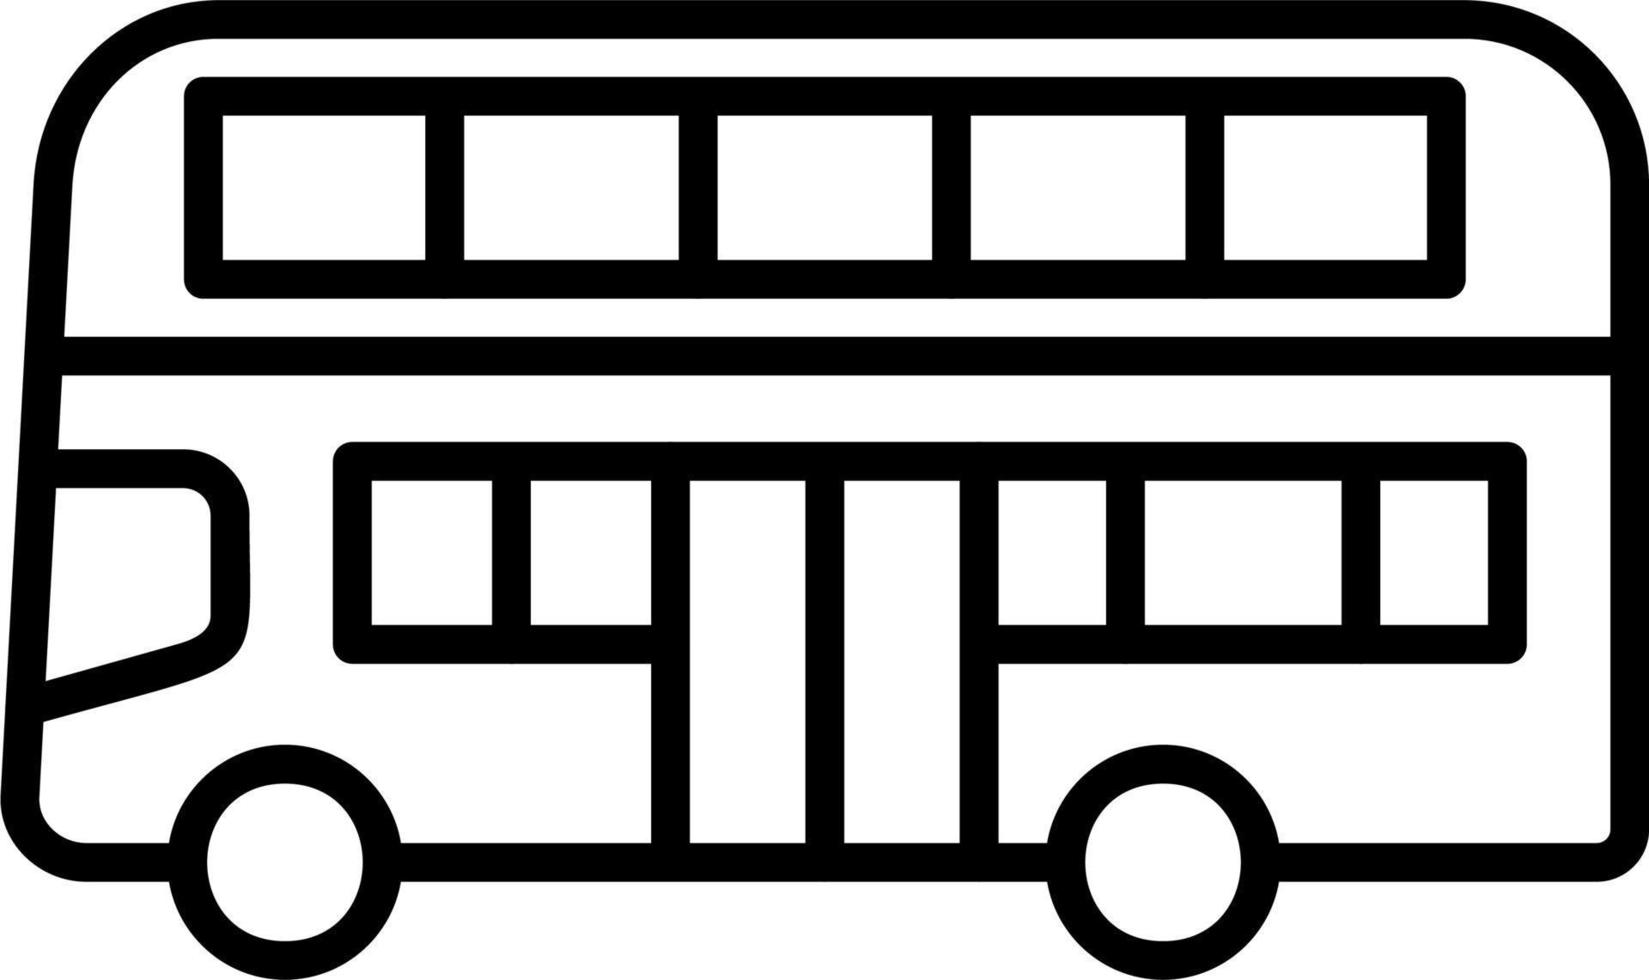 Double Decker Bus Vector Icon